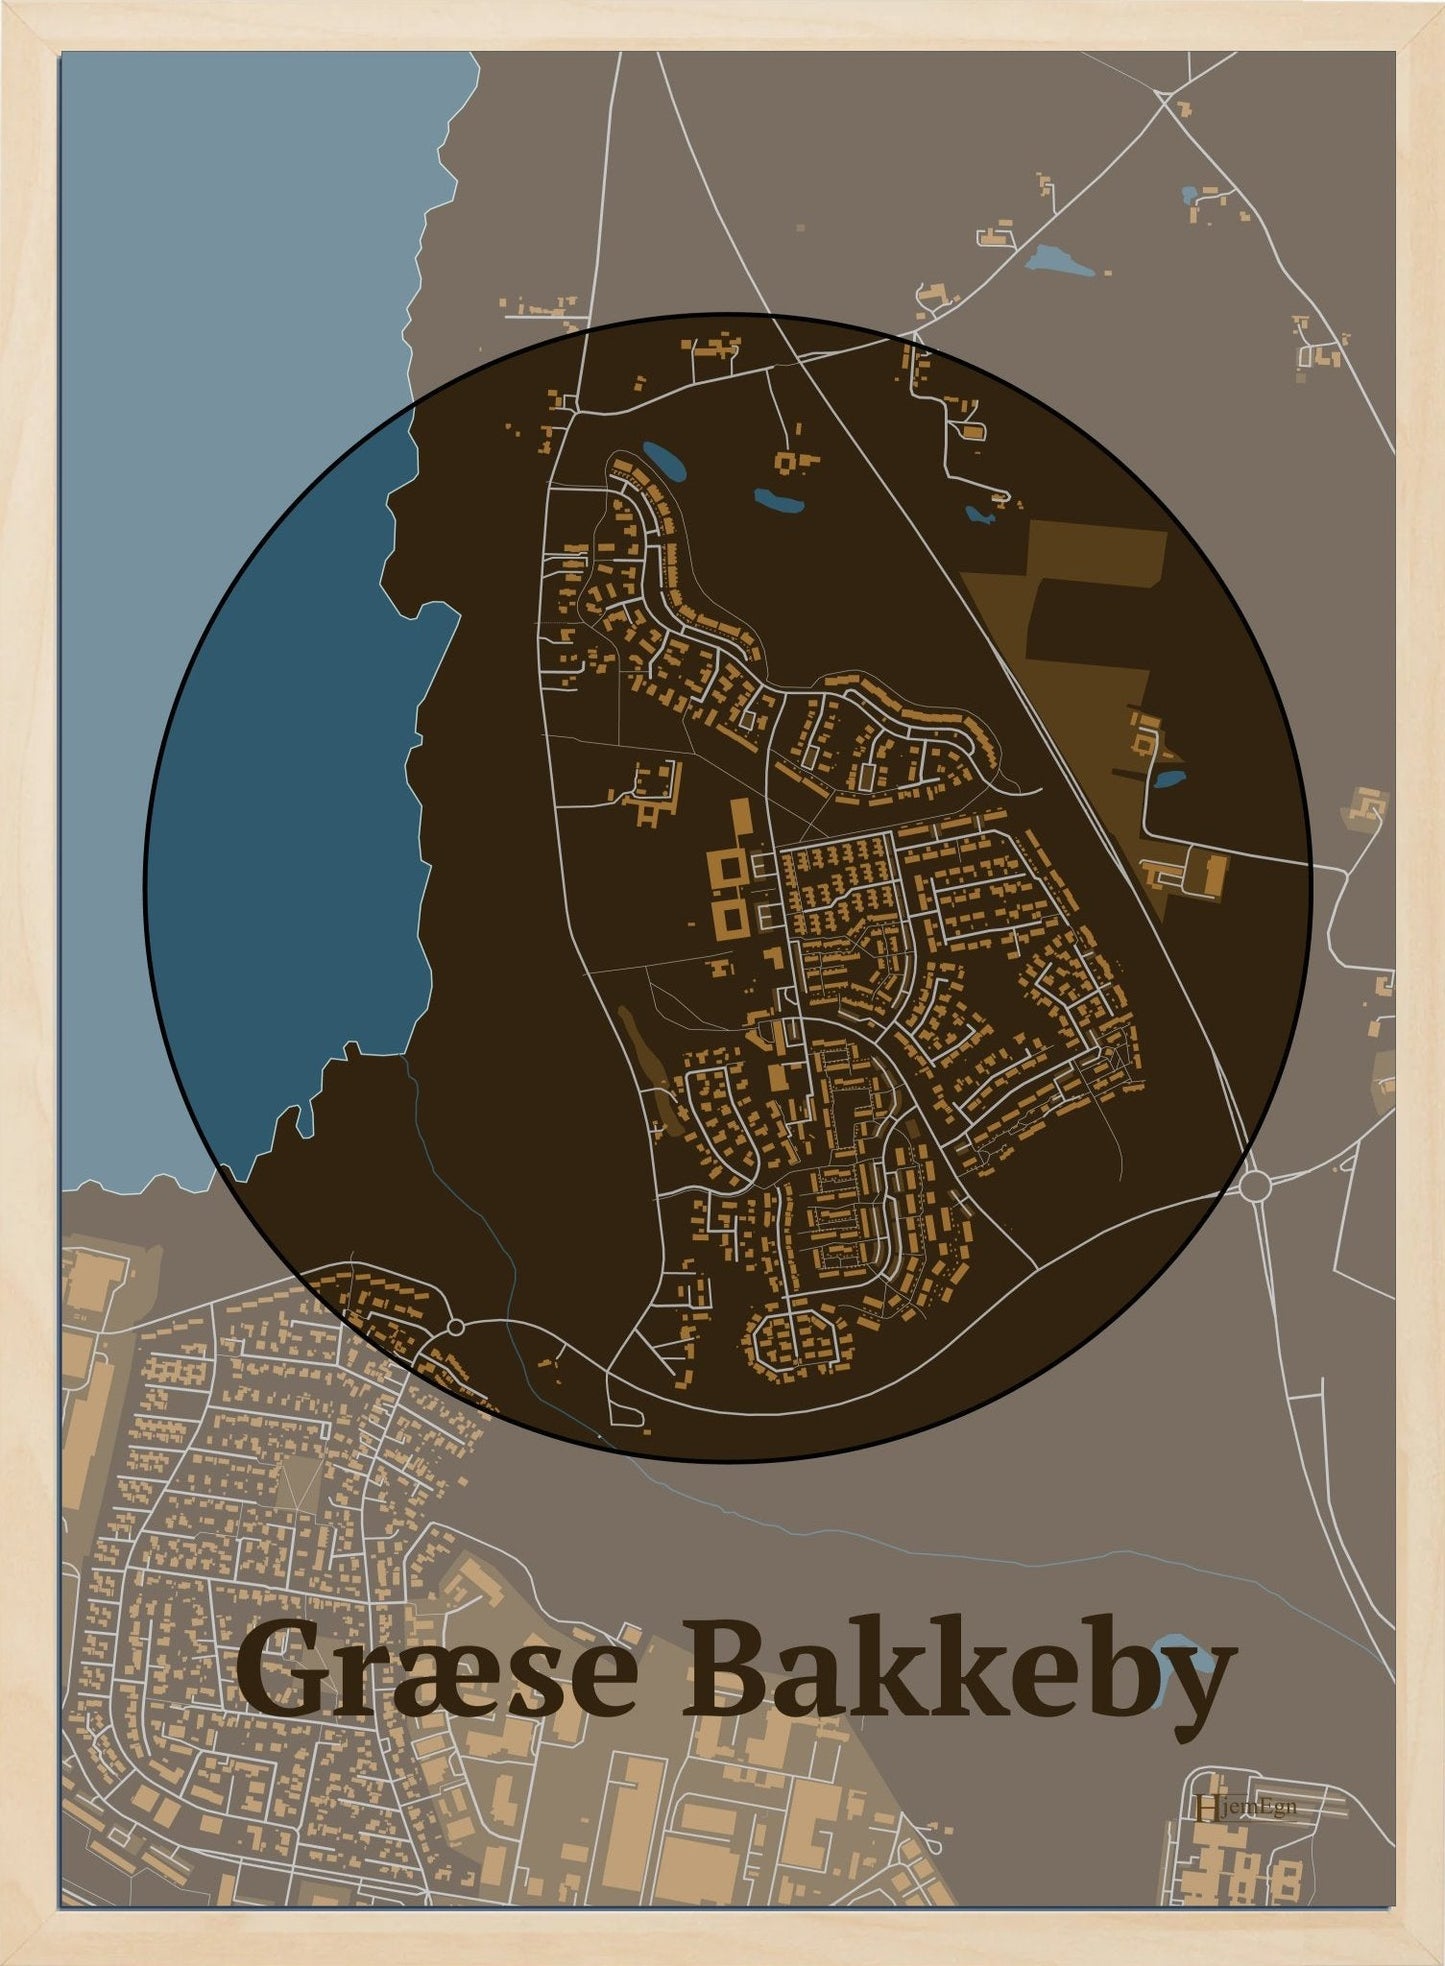 Græse Bakkeby plakat i farve mørk brun og HjemEgn.dk design centrum. Design bykort for Græse Bakkeby